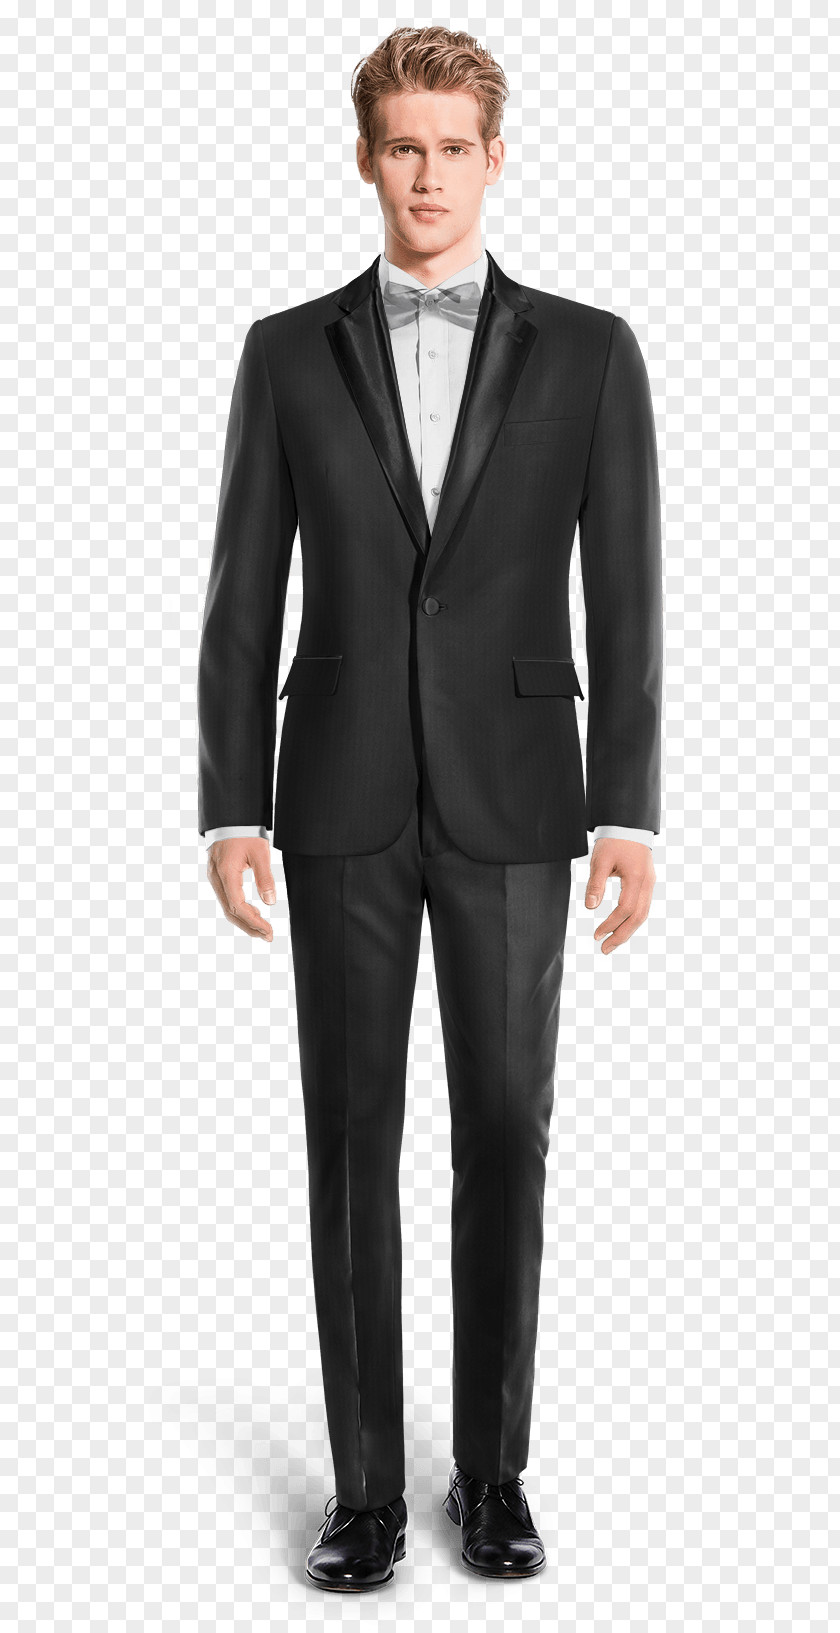 Suit JoS. A. Bank Clothiers Black Tie Shirt Tuxedo PNG